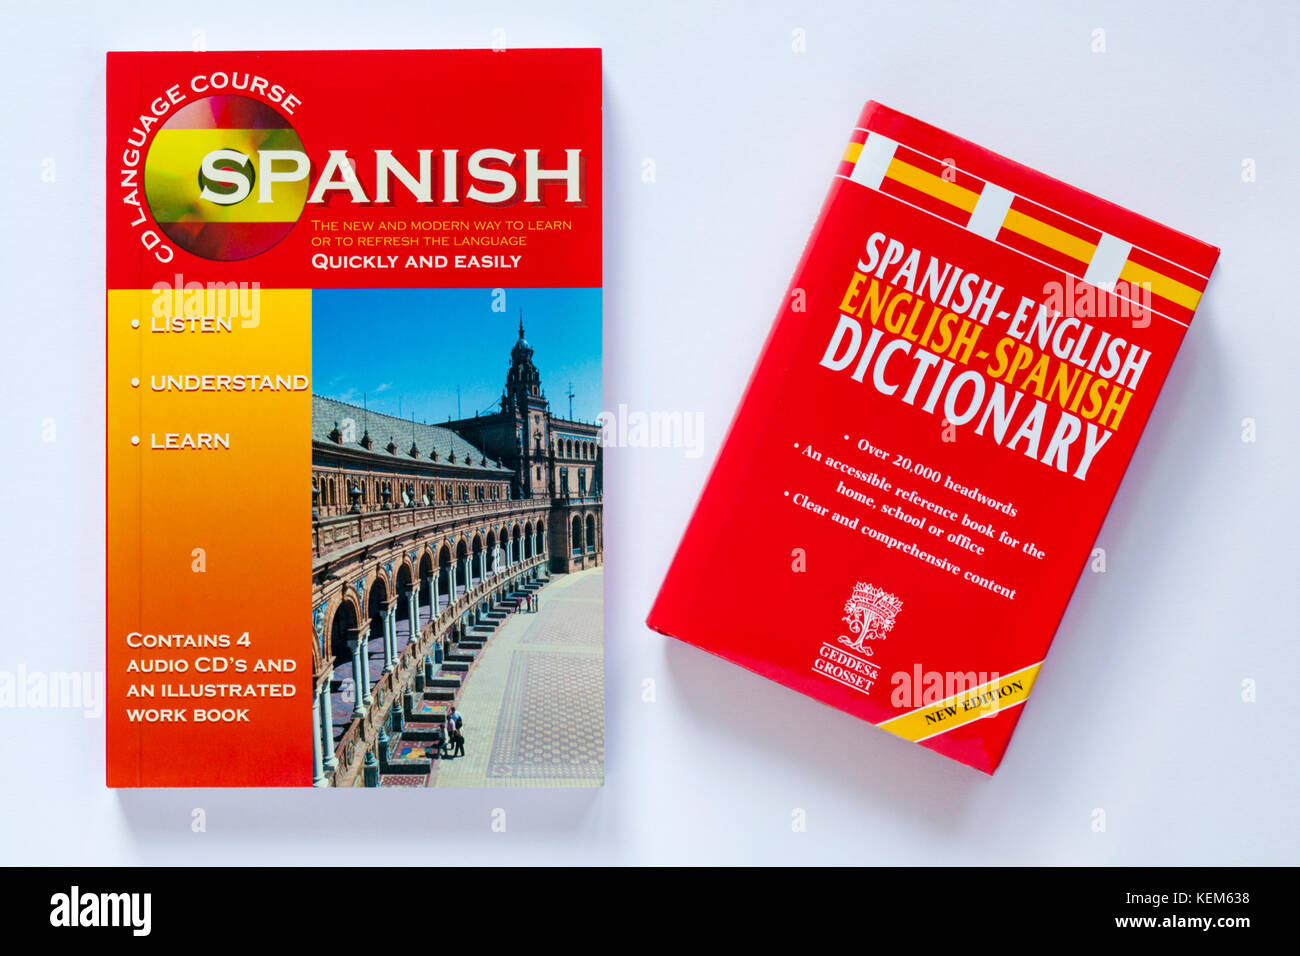 Curso de lengua española de CD contiene 4 CDs de audio y un libro ilustrado con diccionario inglés español aislado sobre fondo blanco. Foto de stock